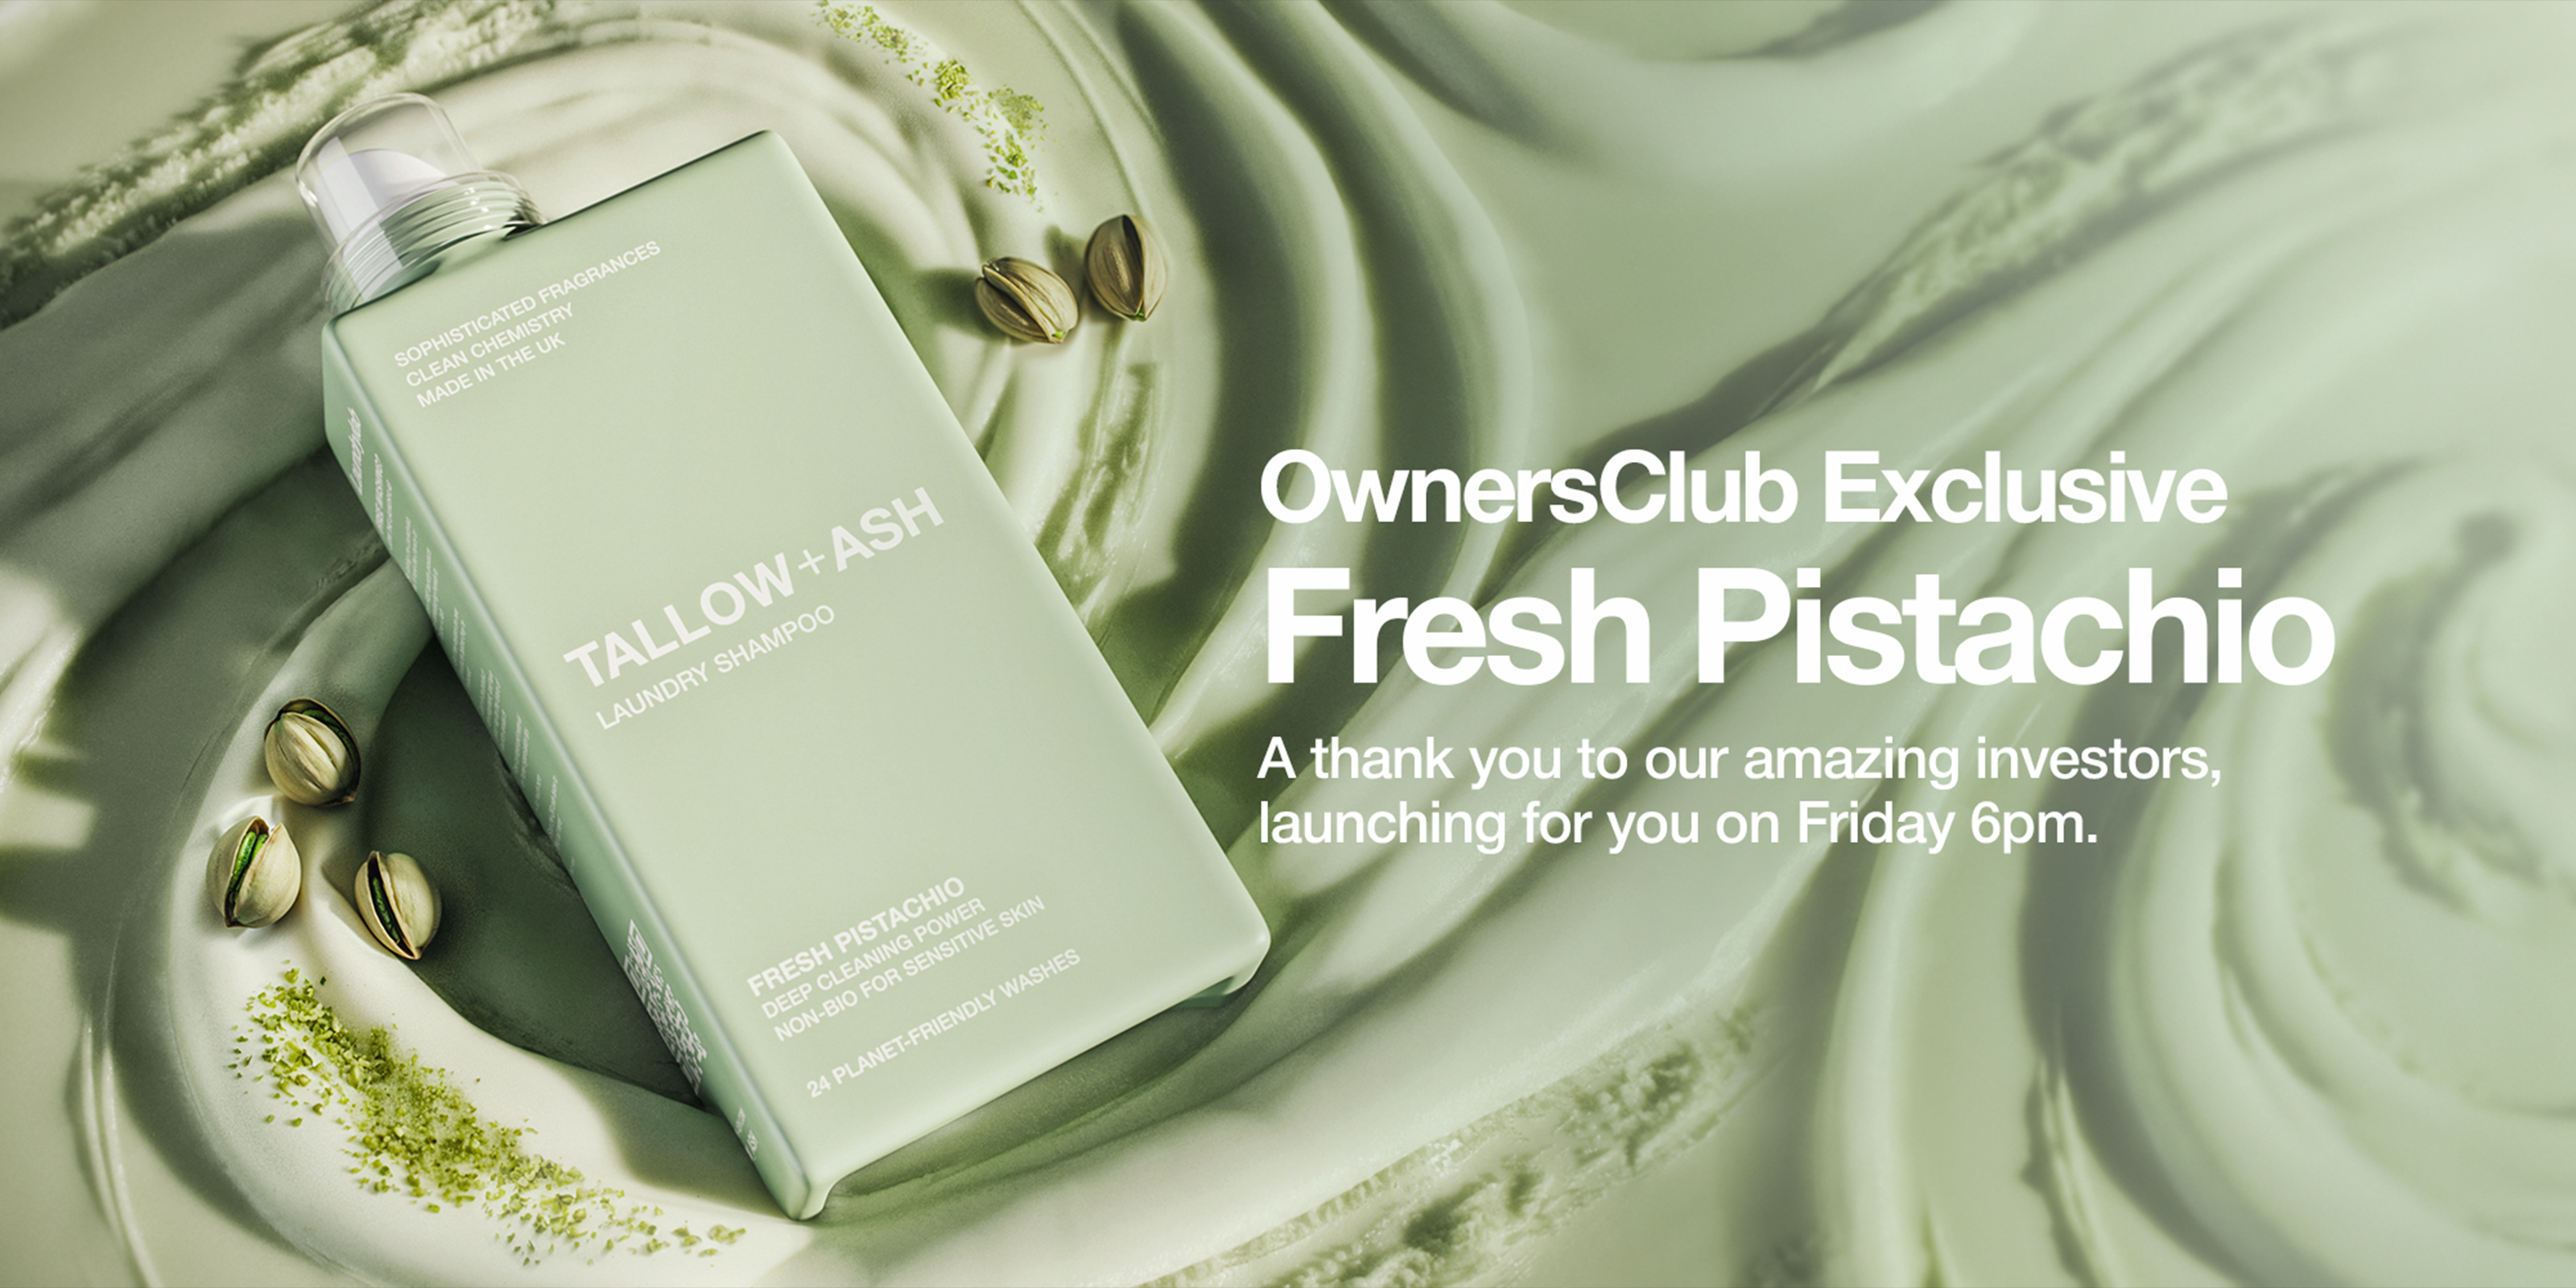 Introducing Fresh Pistachio